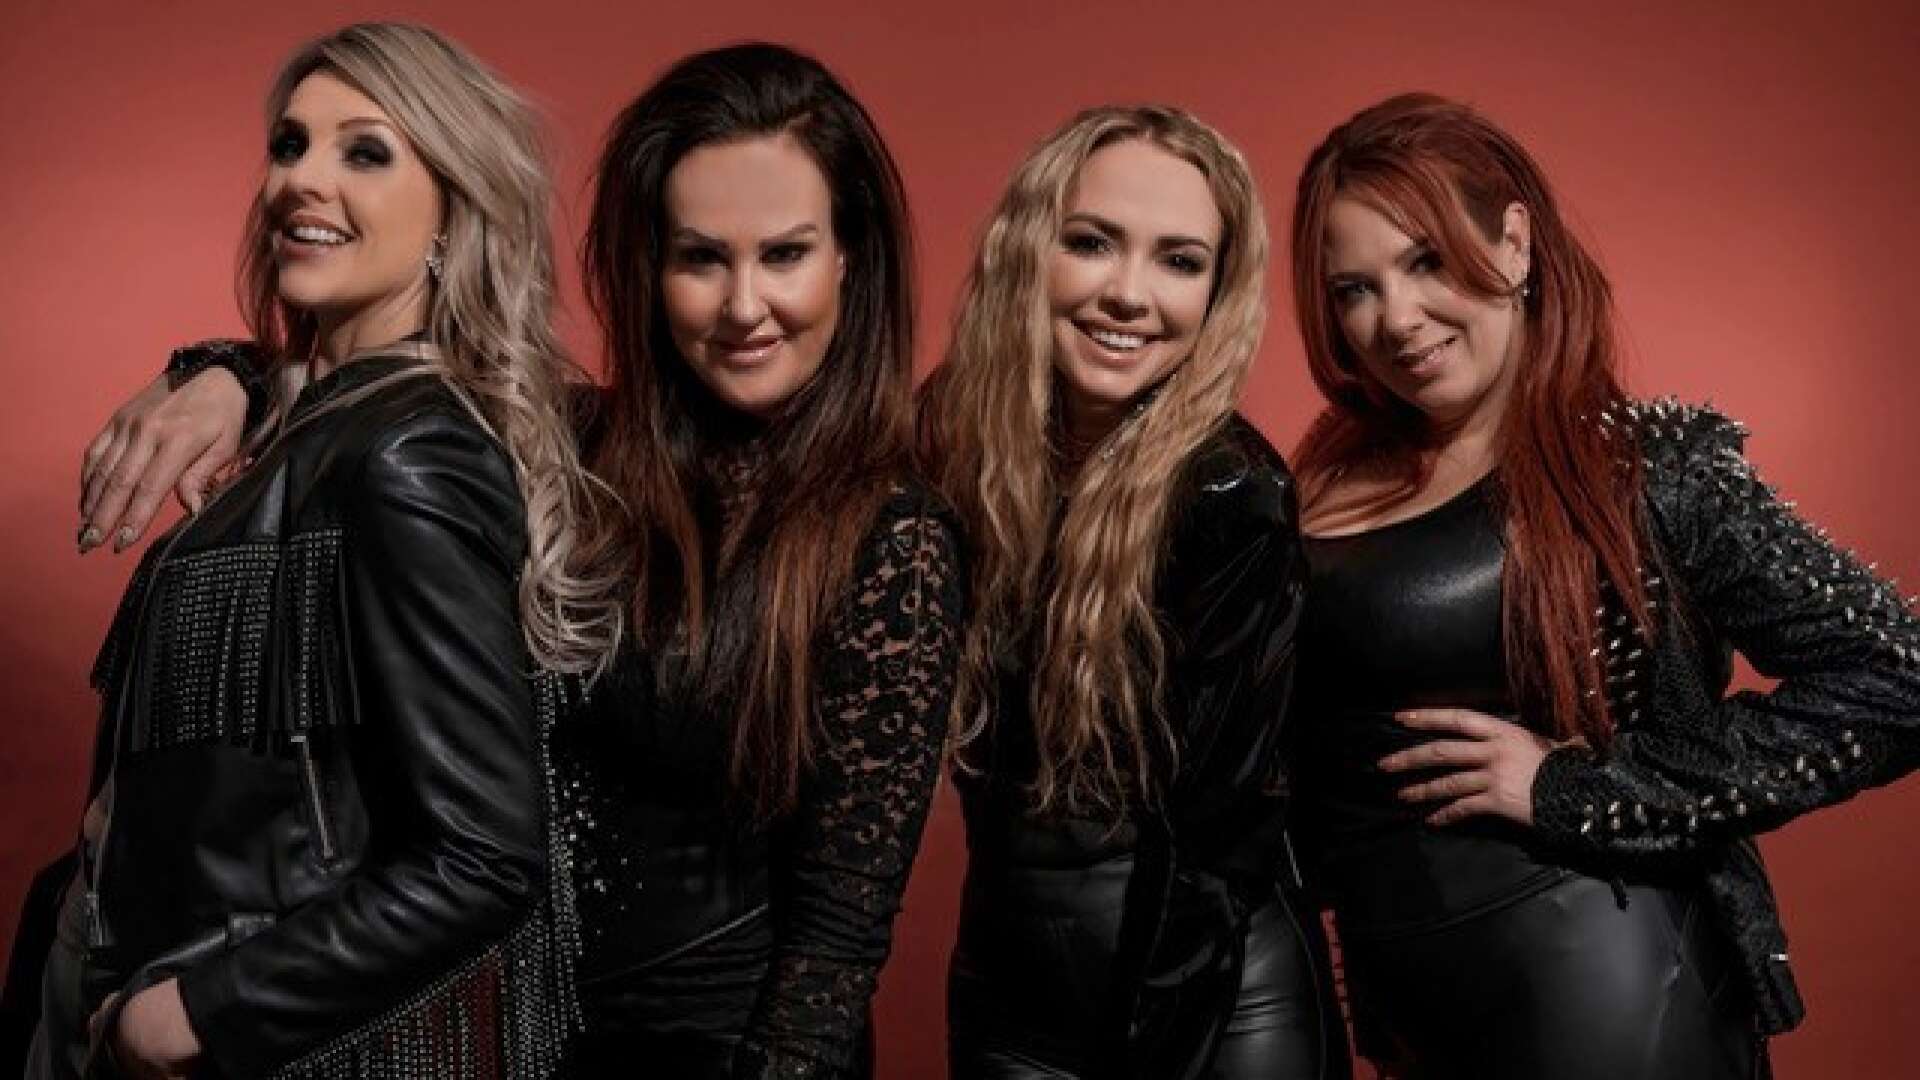 I showen ”Queens” möts Karin Funk, Nina Söderquist, Anna Sahlene och Anna-Mia Bonde för att hylla det brittiska rockbandet Queen.